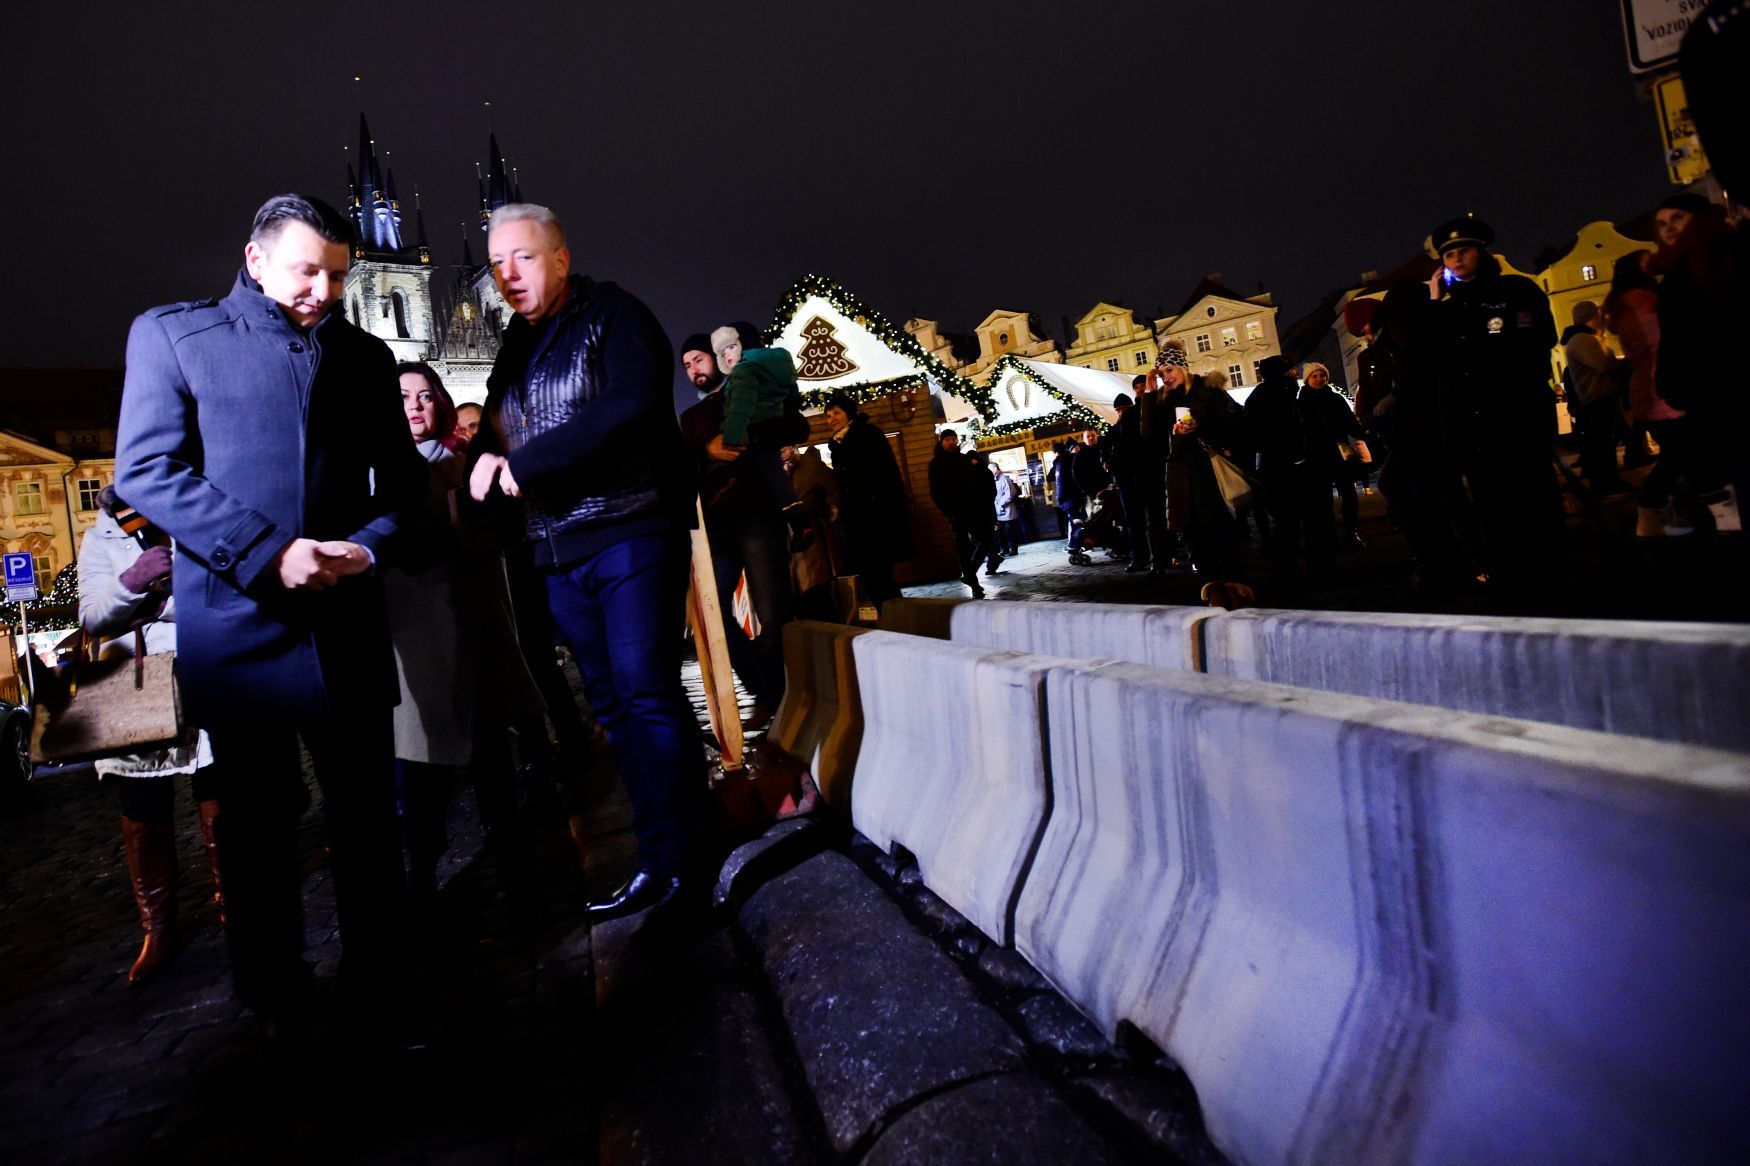 Milan Chovanec Tomáš Tuhý betonové zátarasy vánoční trhy Staroměstské náměstí terorismus